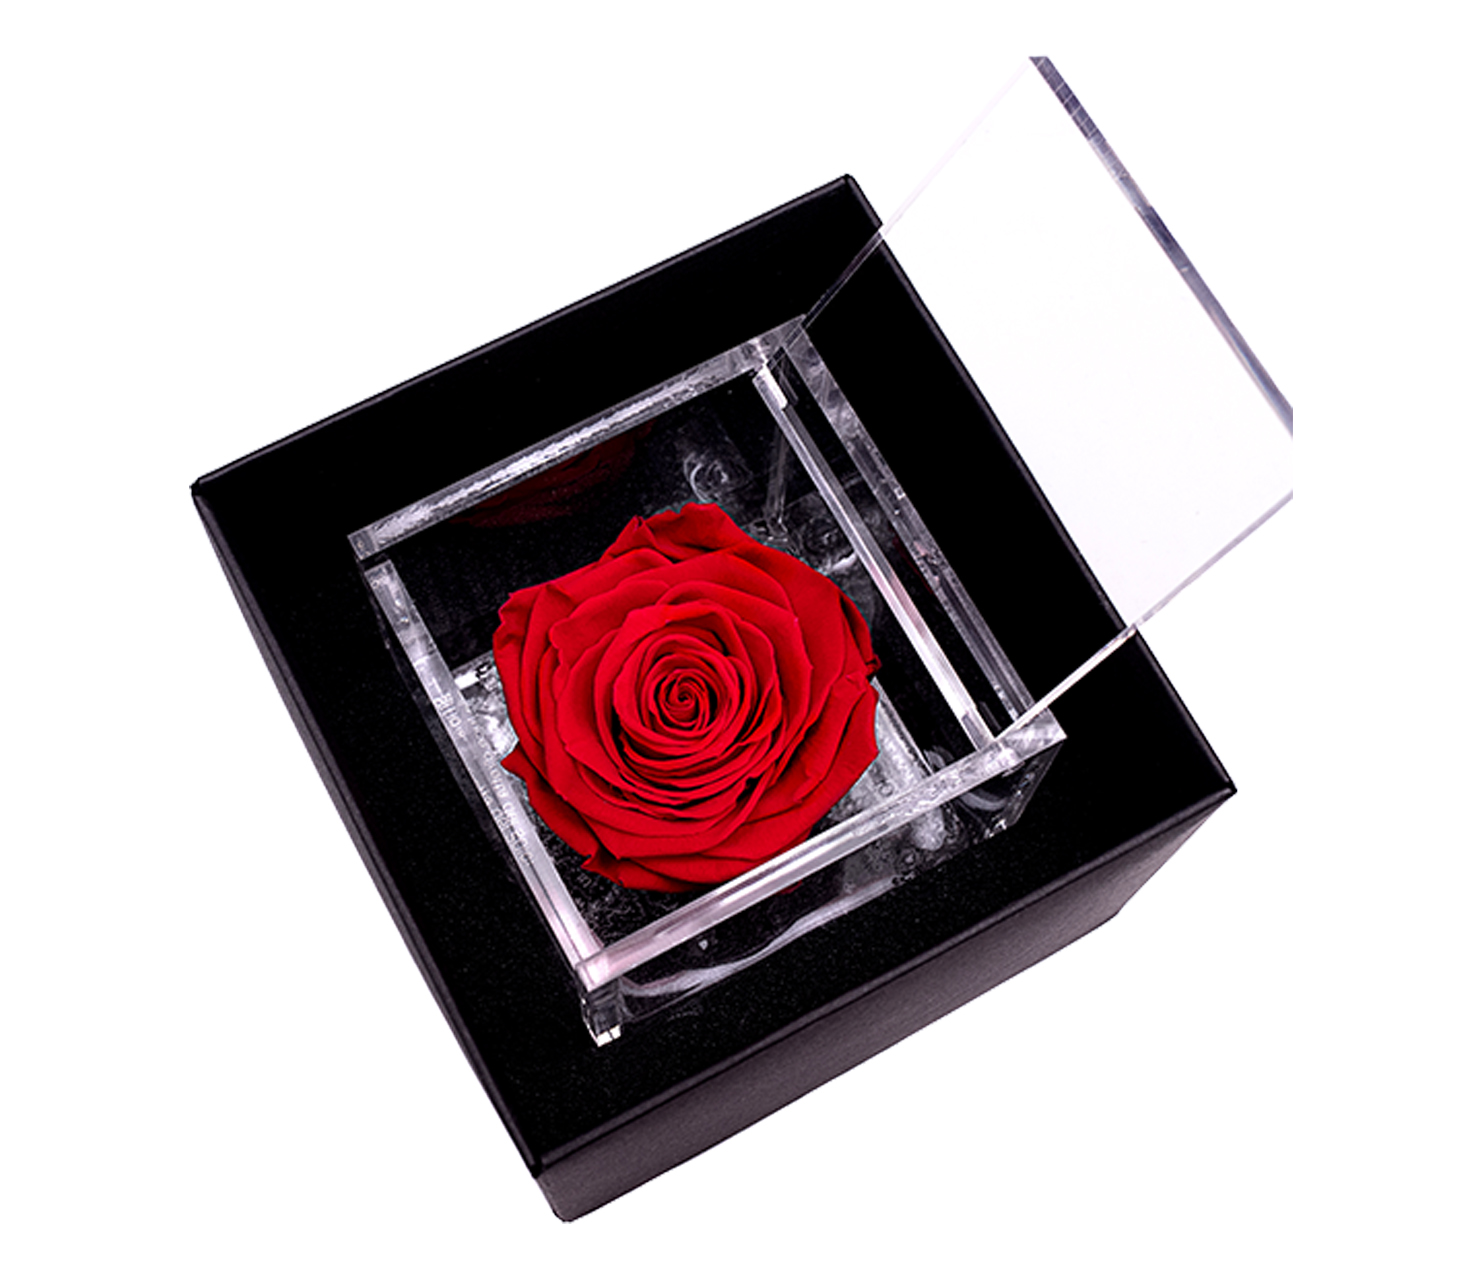 Rosa Stabilizzata - Atelier Flower Shop - Acquista e Consegna